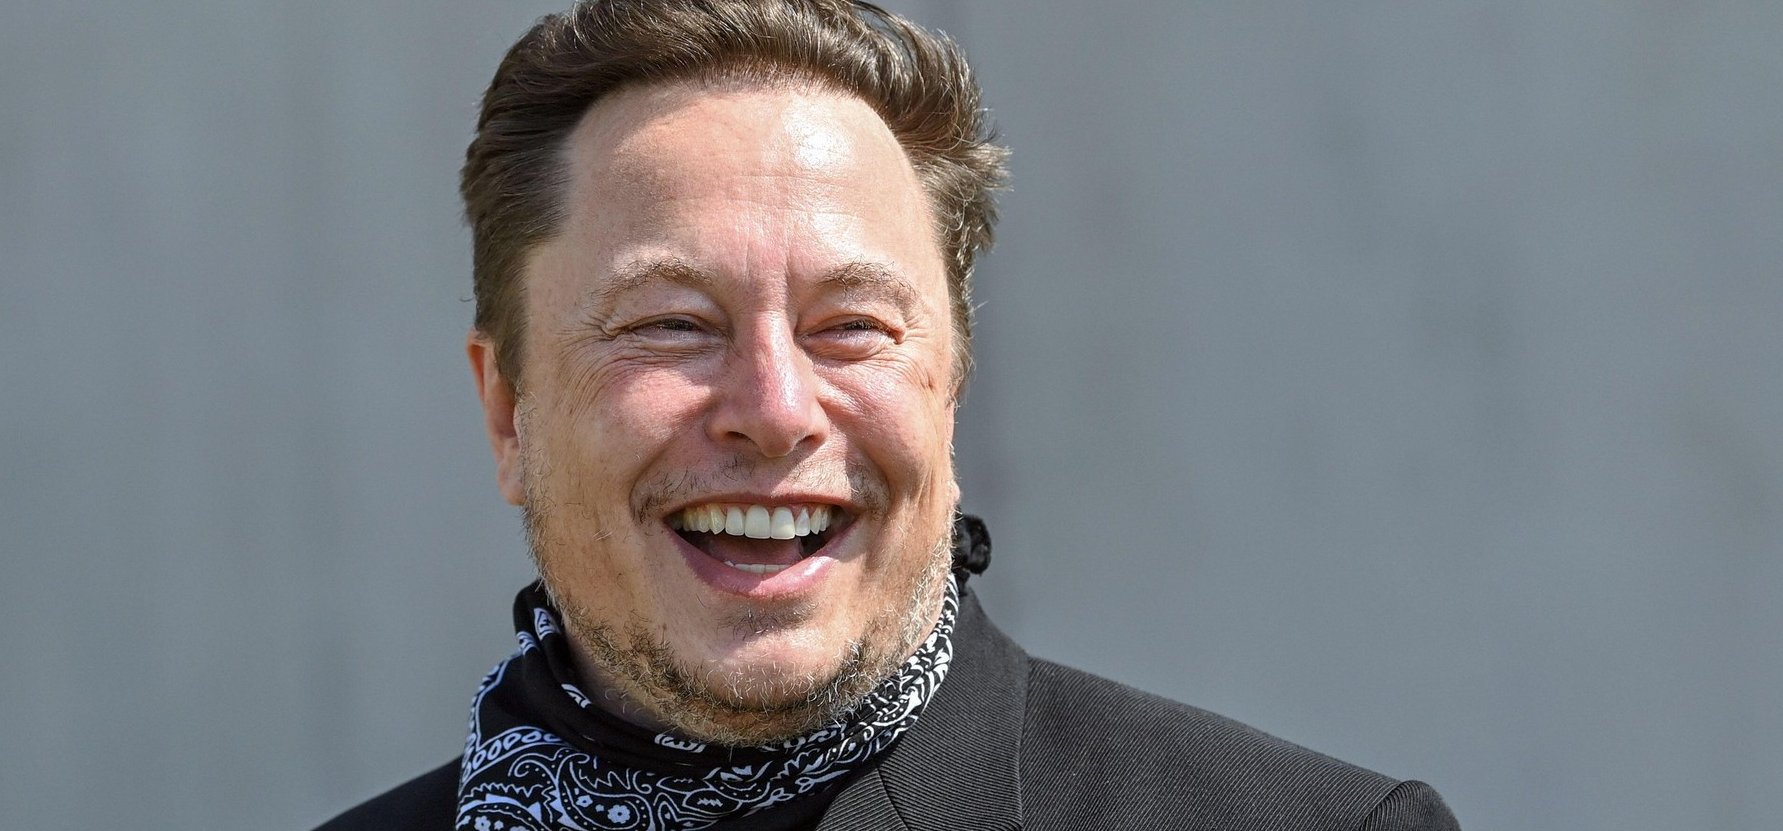 Elon Musk kiszeretett a Twitterből, és most egy sokkal nagyobb falatot vett célba